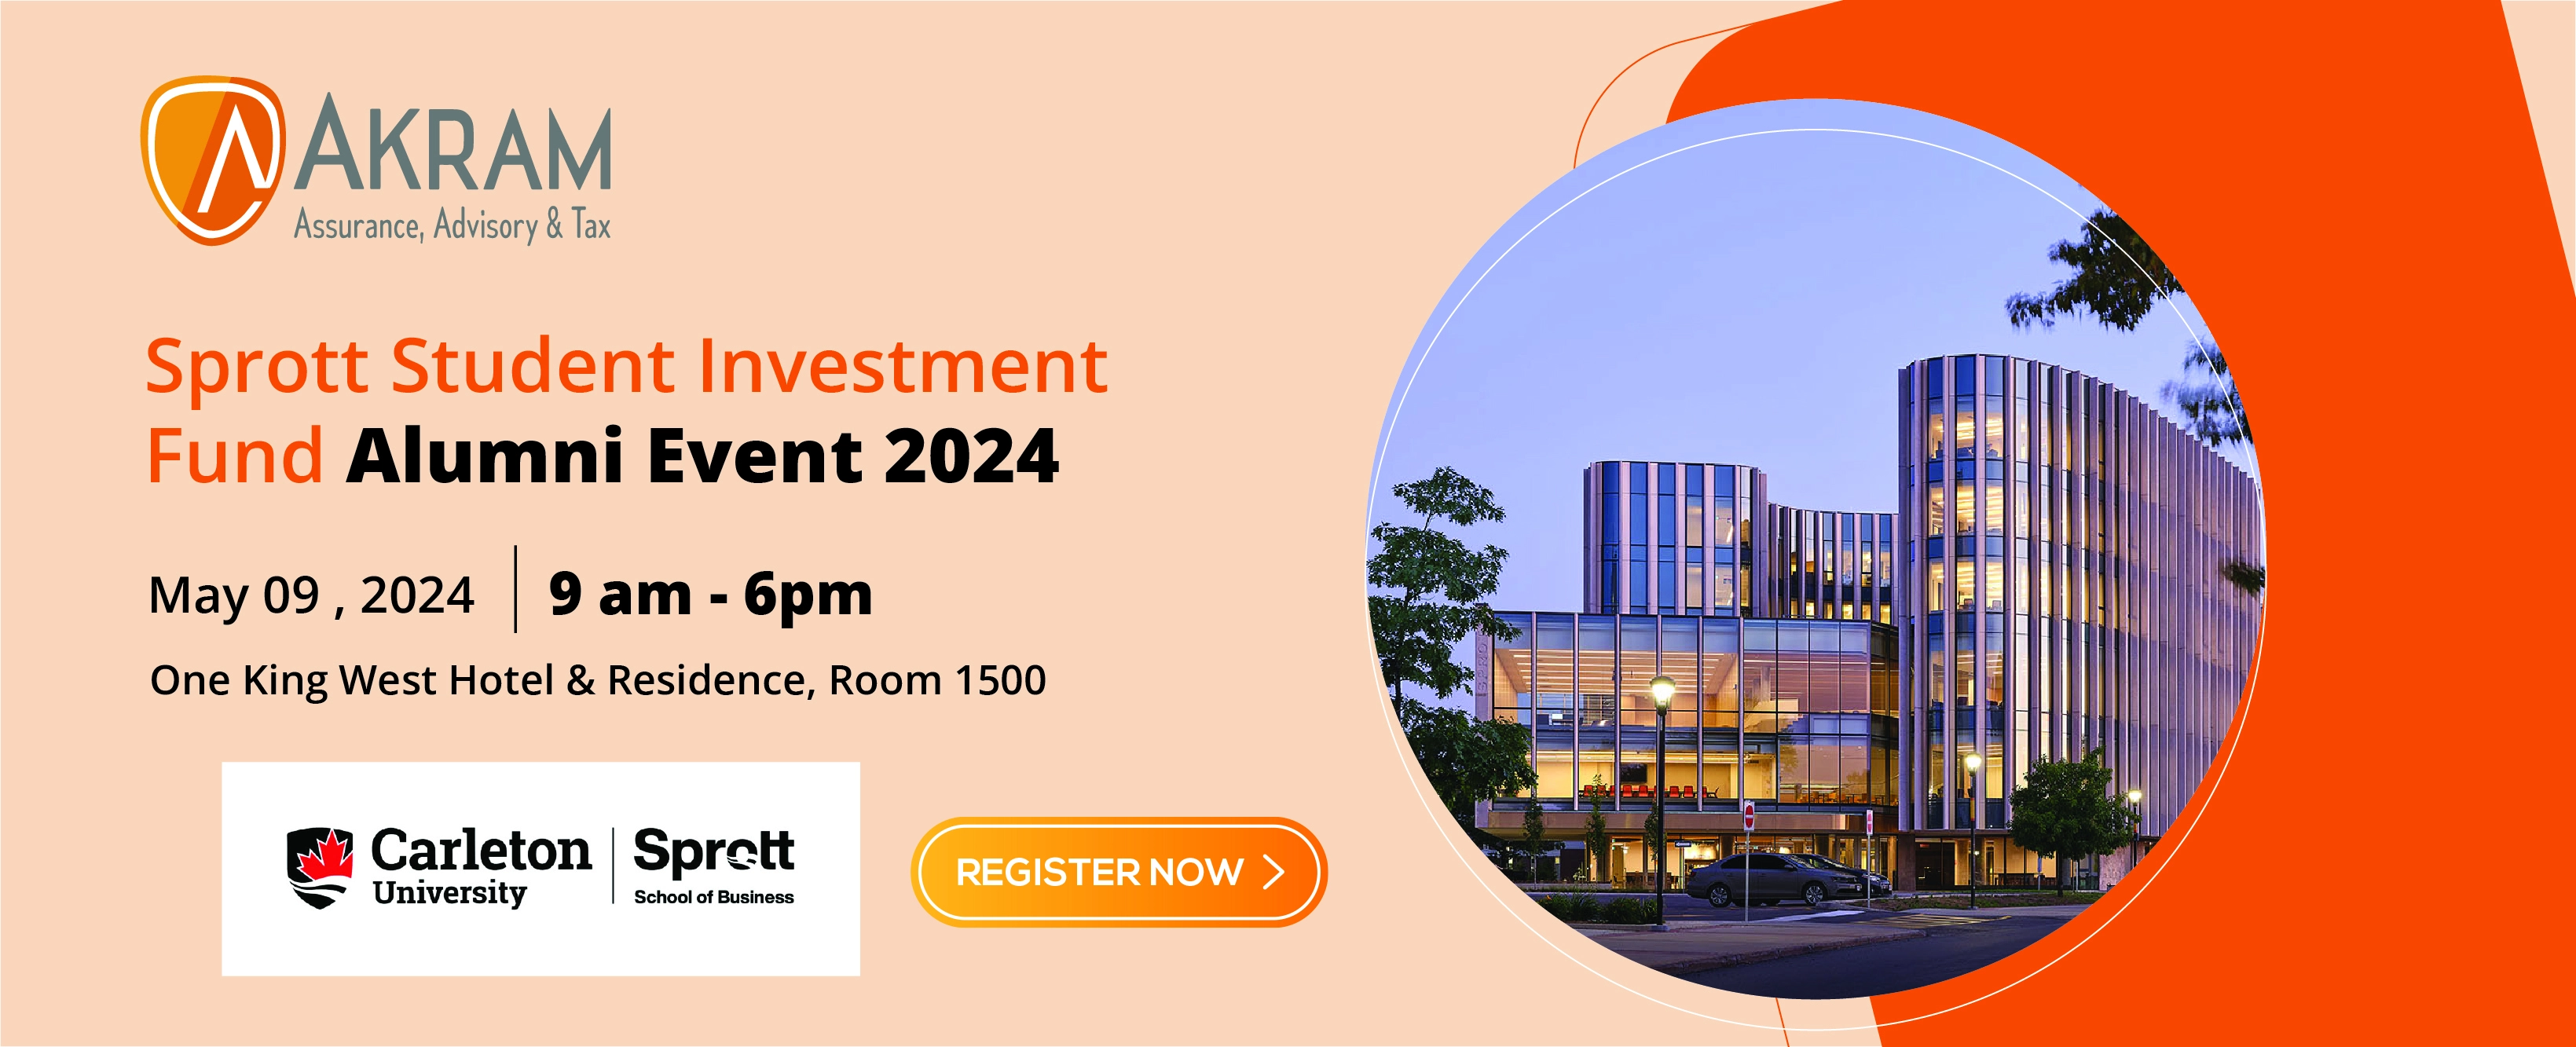 Sprott Student Investment Fund Alumni Event 2024